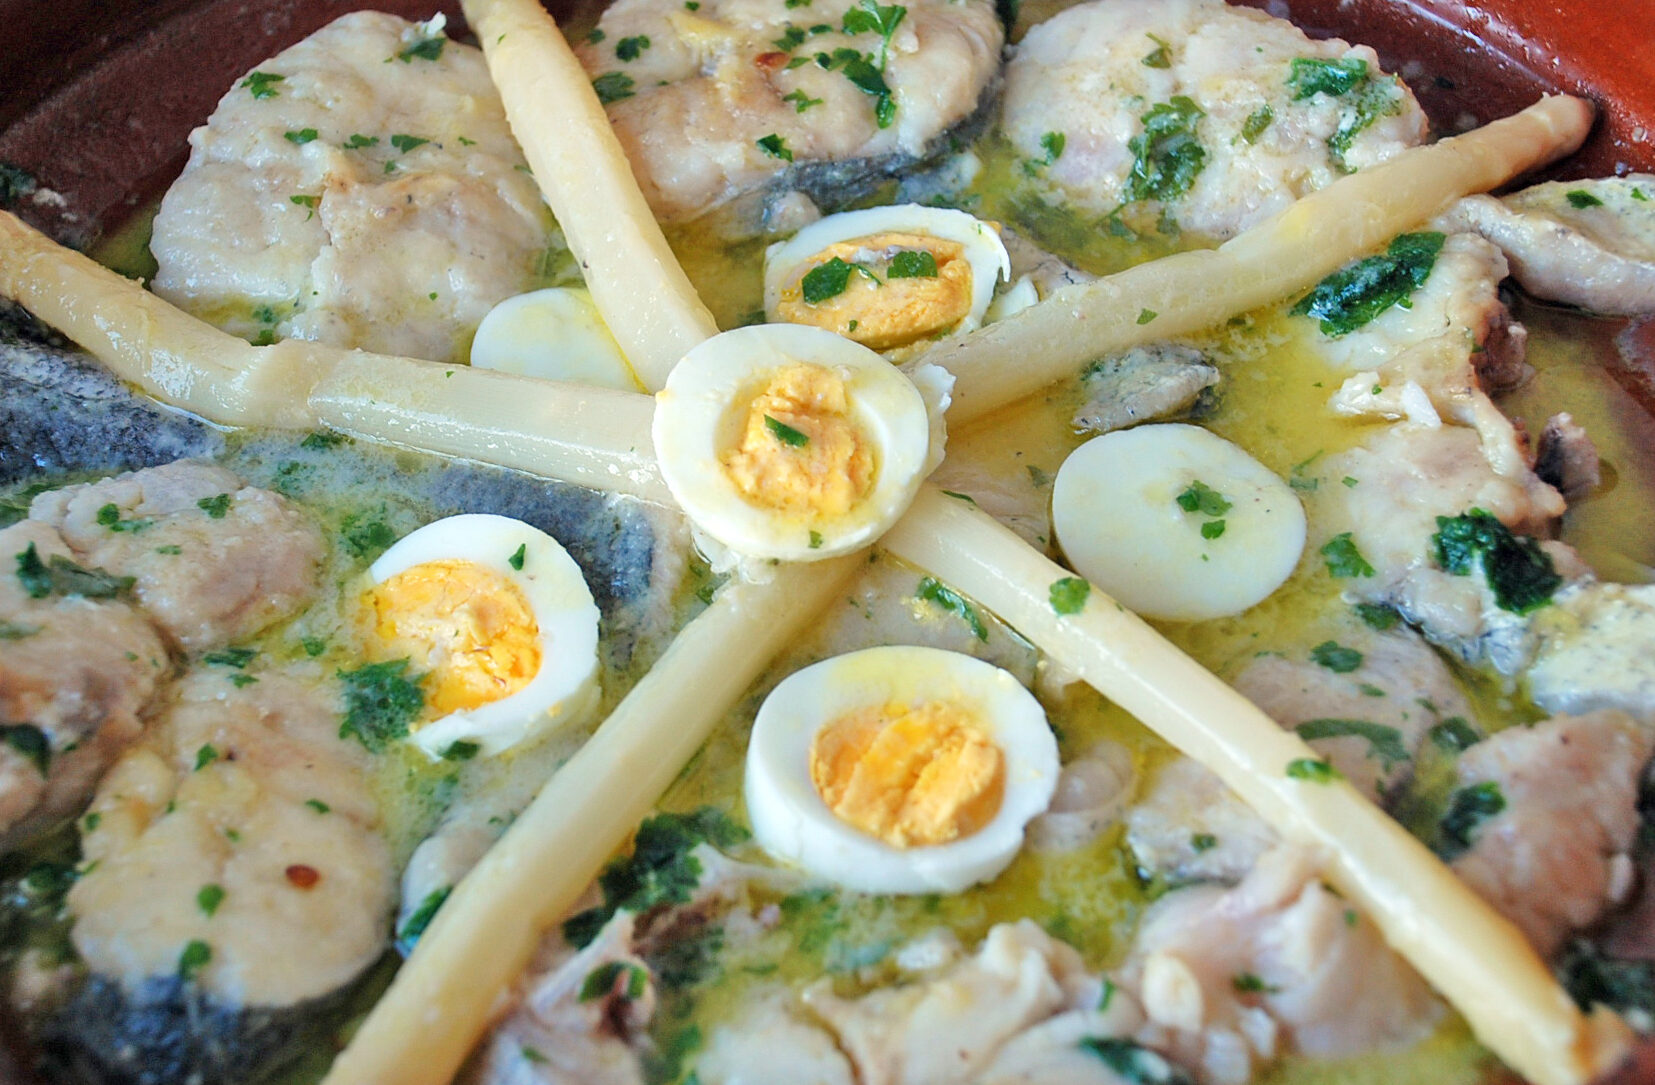 Descubre la exquisita gastronomía del País Vasco con sus platos típicos